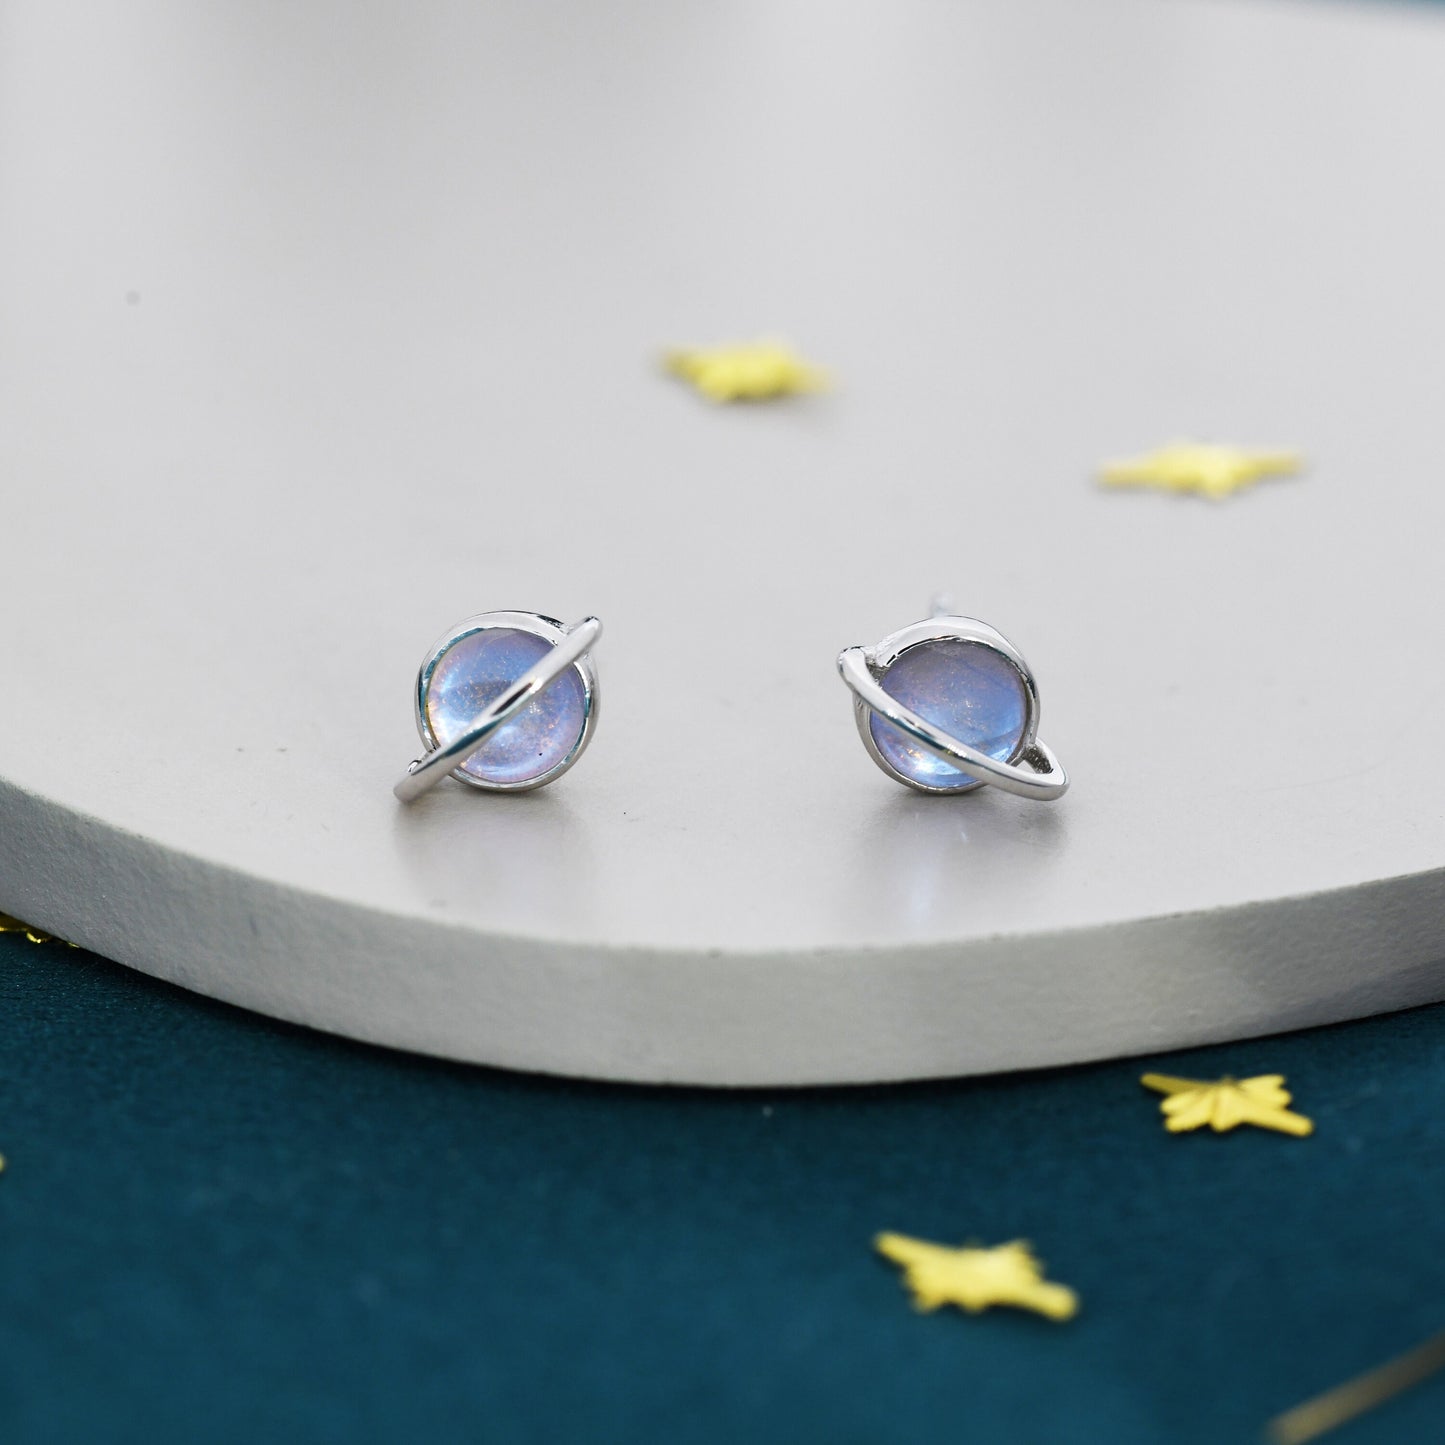 Moonstone Planet Stud Earrings in Sterling Silver, Lab Moonstone Planet Earrings, Opal Saturn Earrings